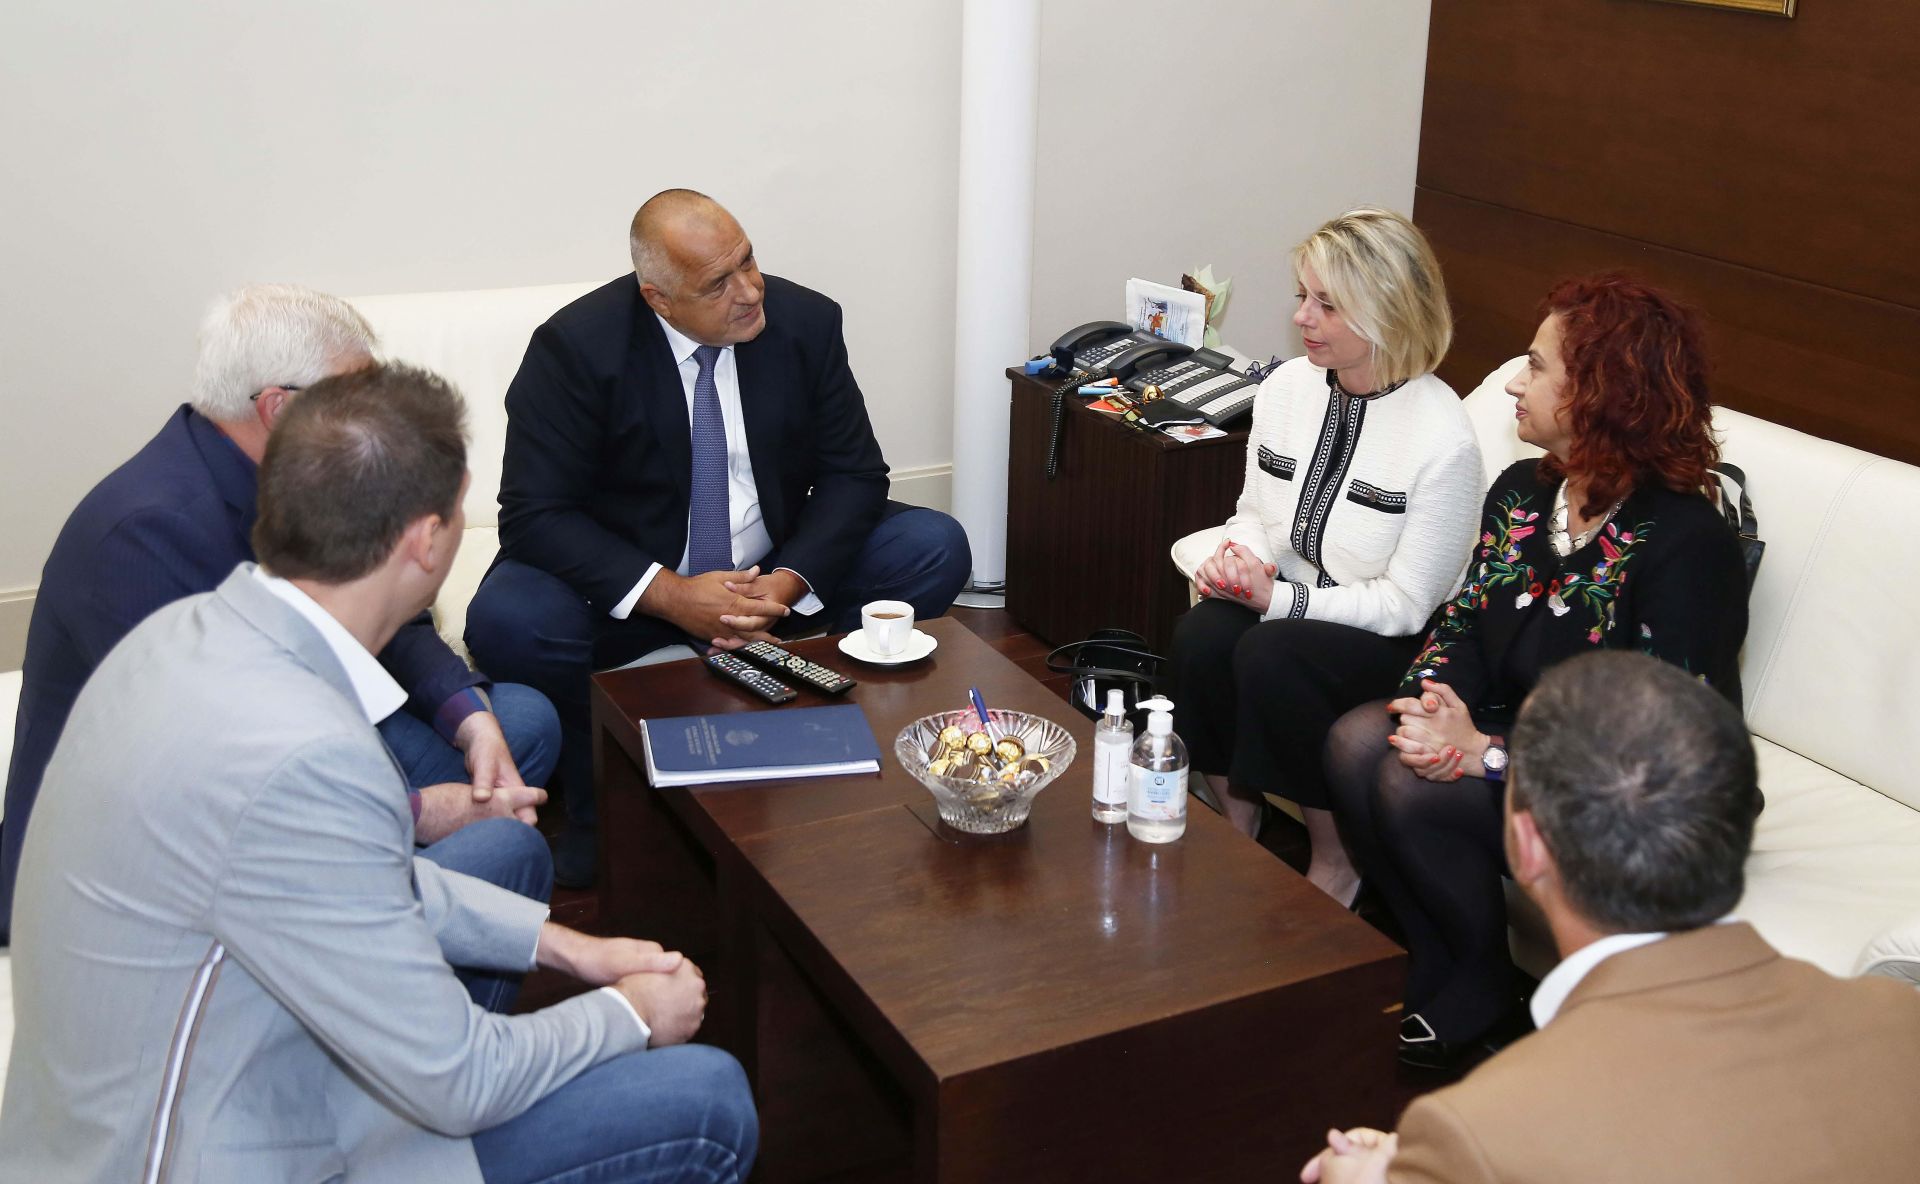 Премиерът Бойко Борисов се срещна с представители на Българското конгресно бюро. В срещата участваха също министърът на здравеопазването Кирил Ананиев и проф. Тодор Кантарджиев от Националния оперативен щаб